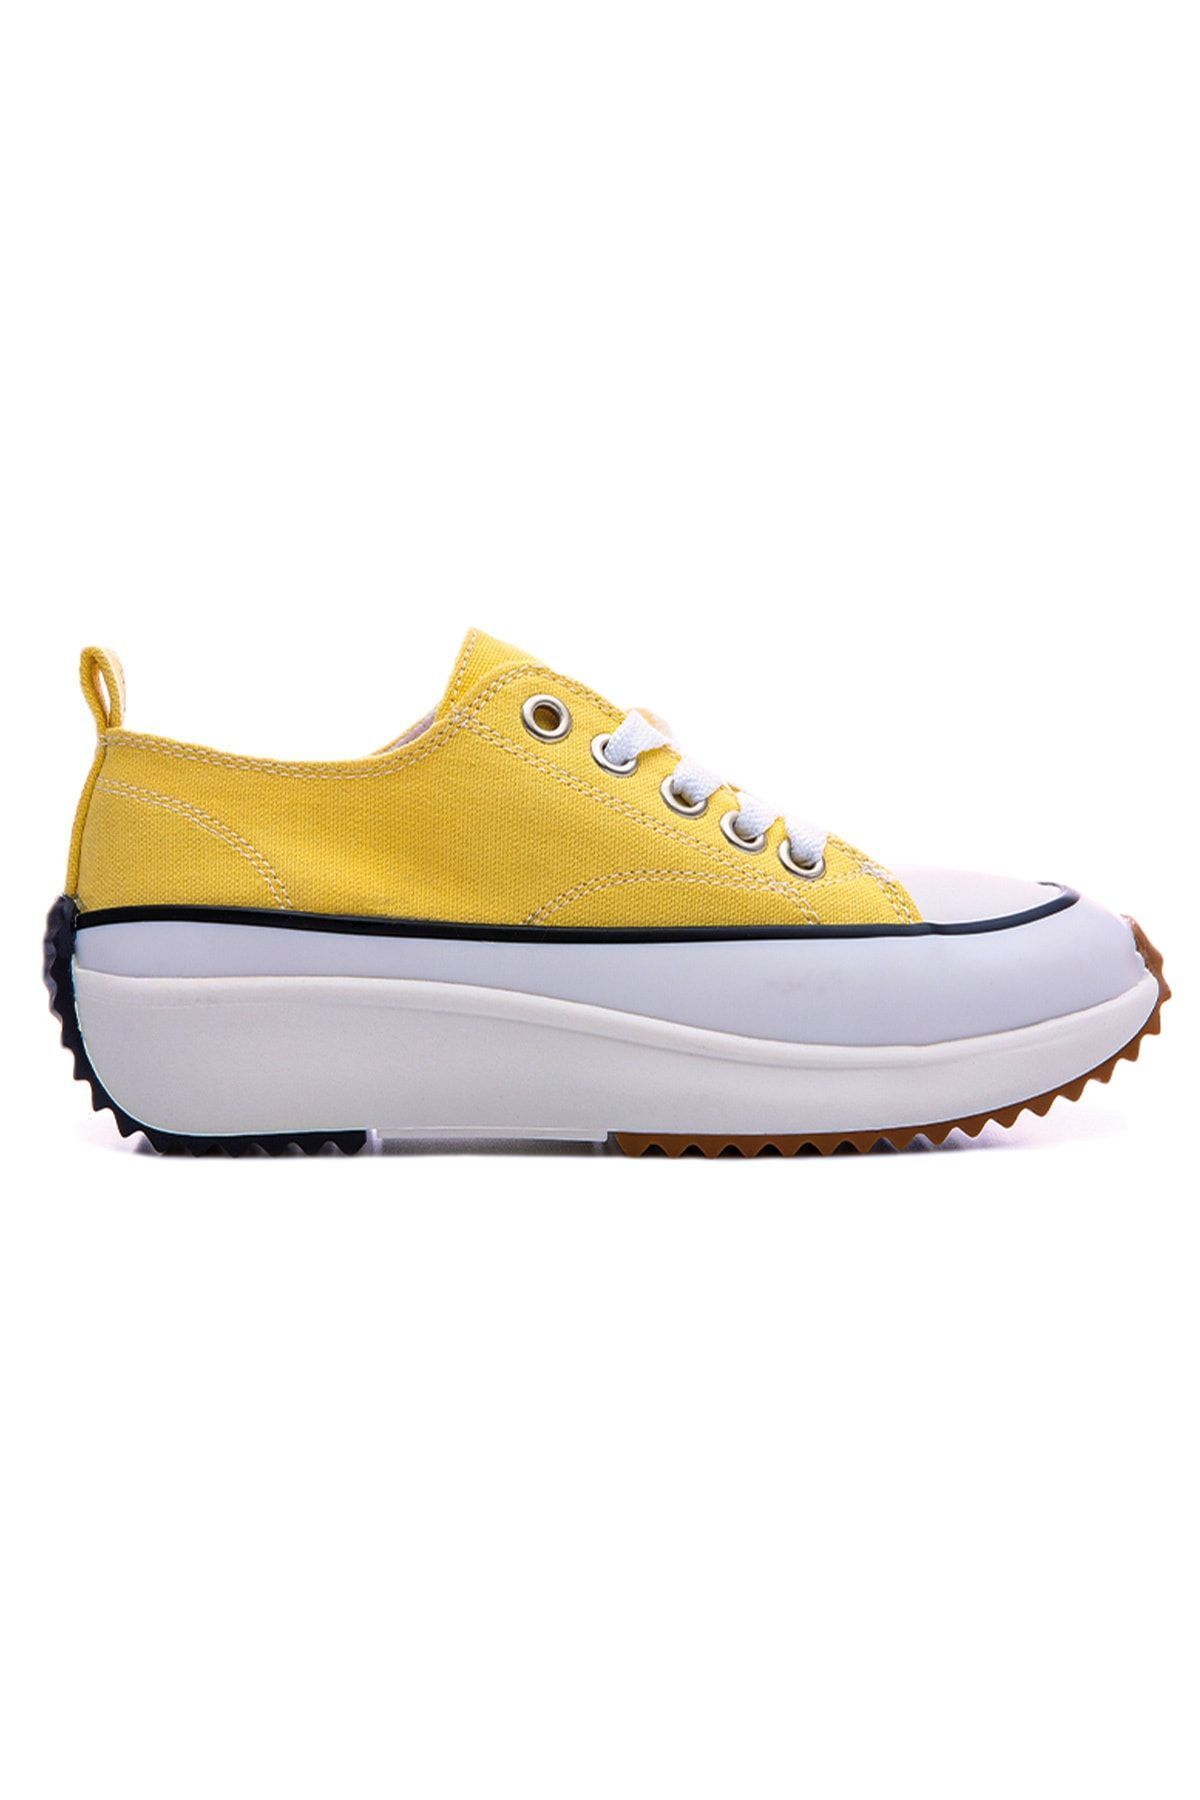 TOMMY LIFE Sarı Kadın Bağcıklı Yüksek Taban Günlük Spor Ayakkabı-89070